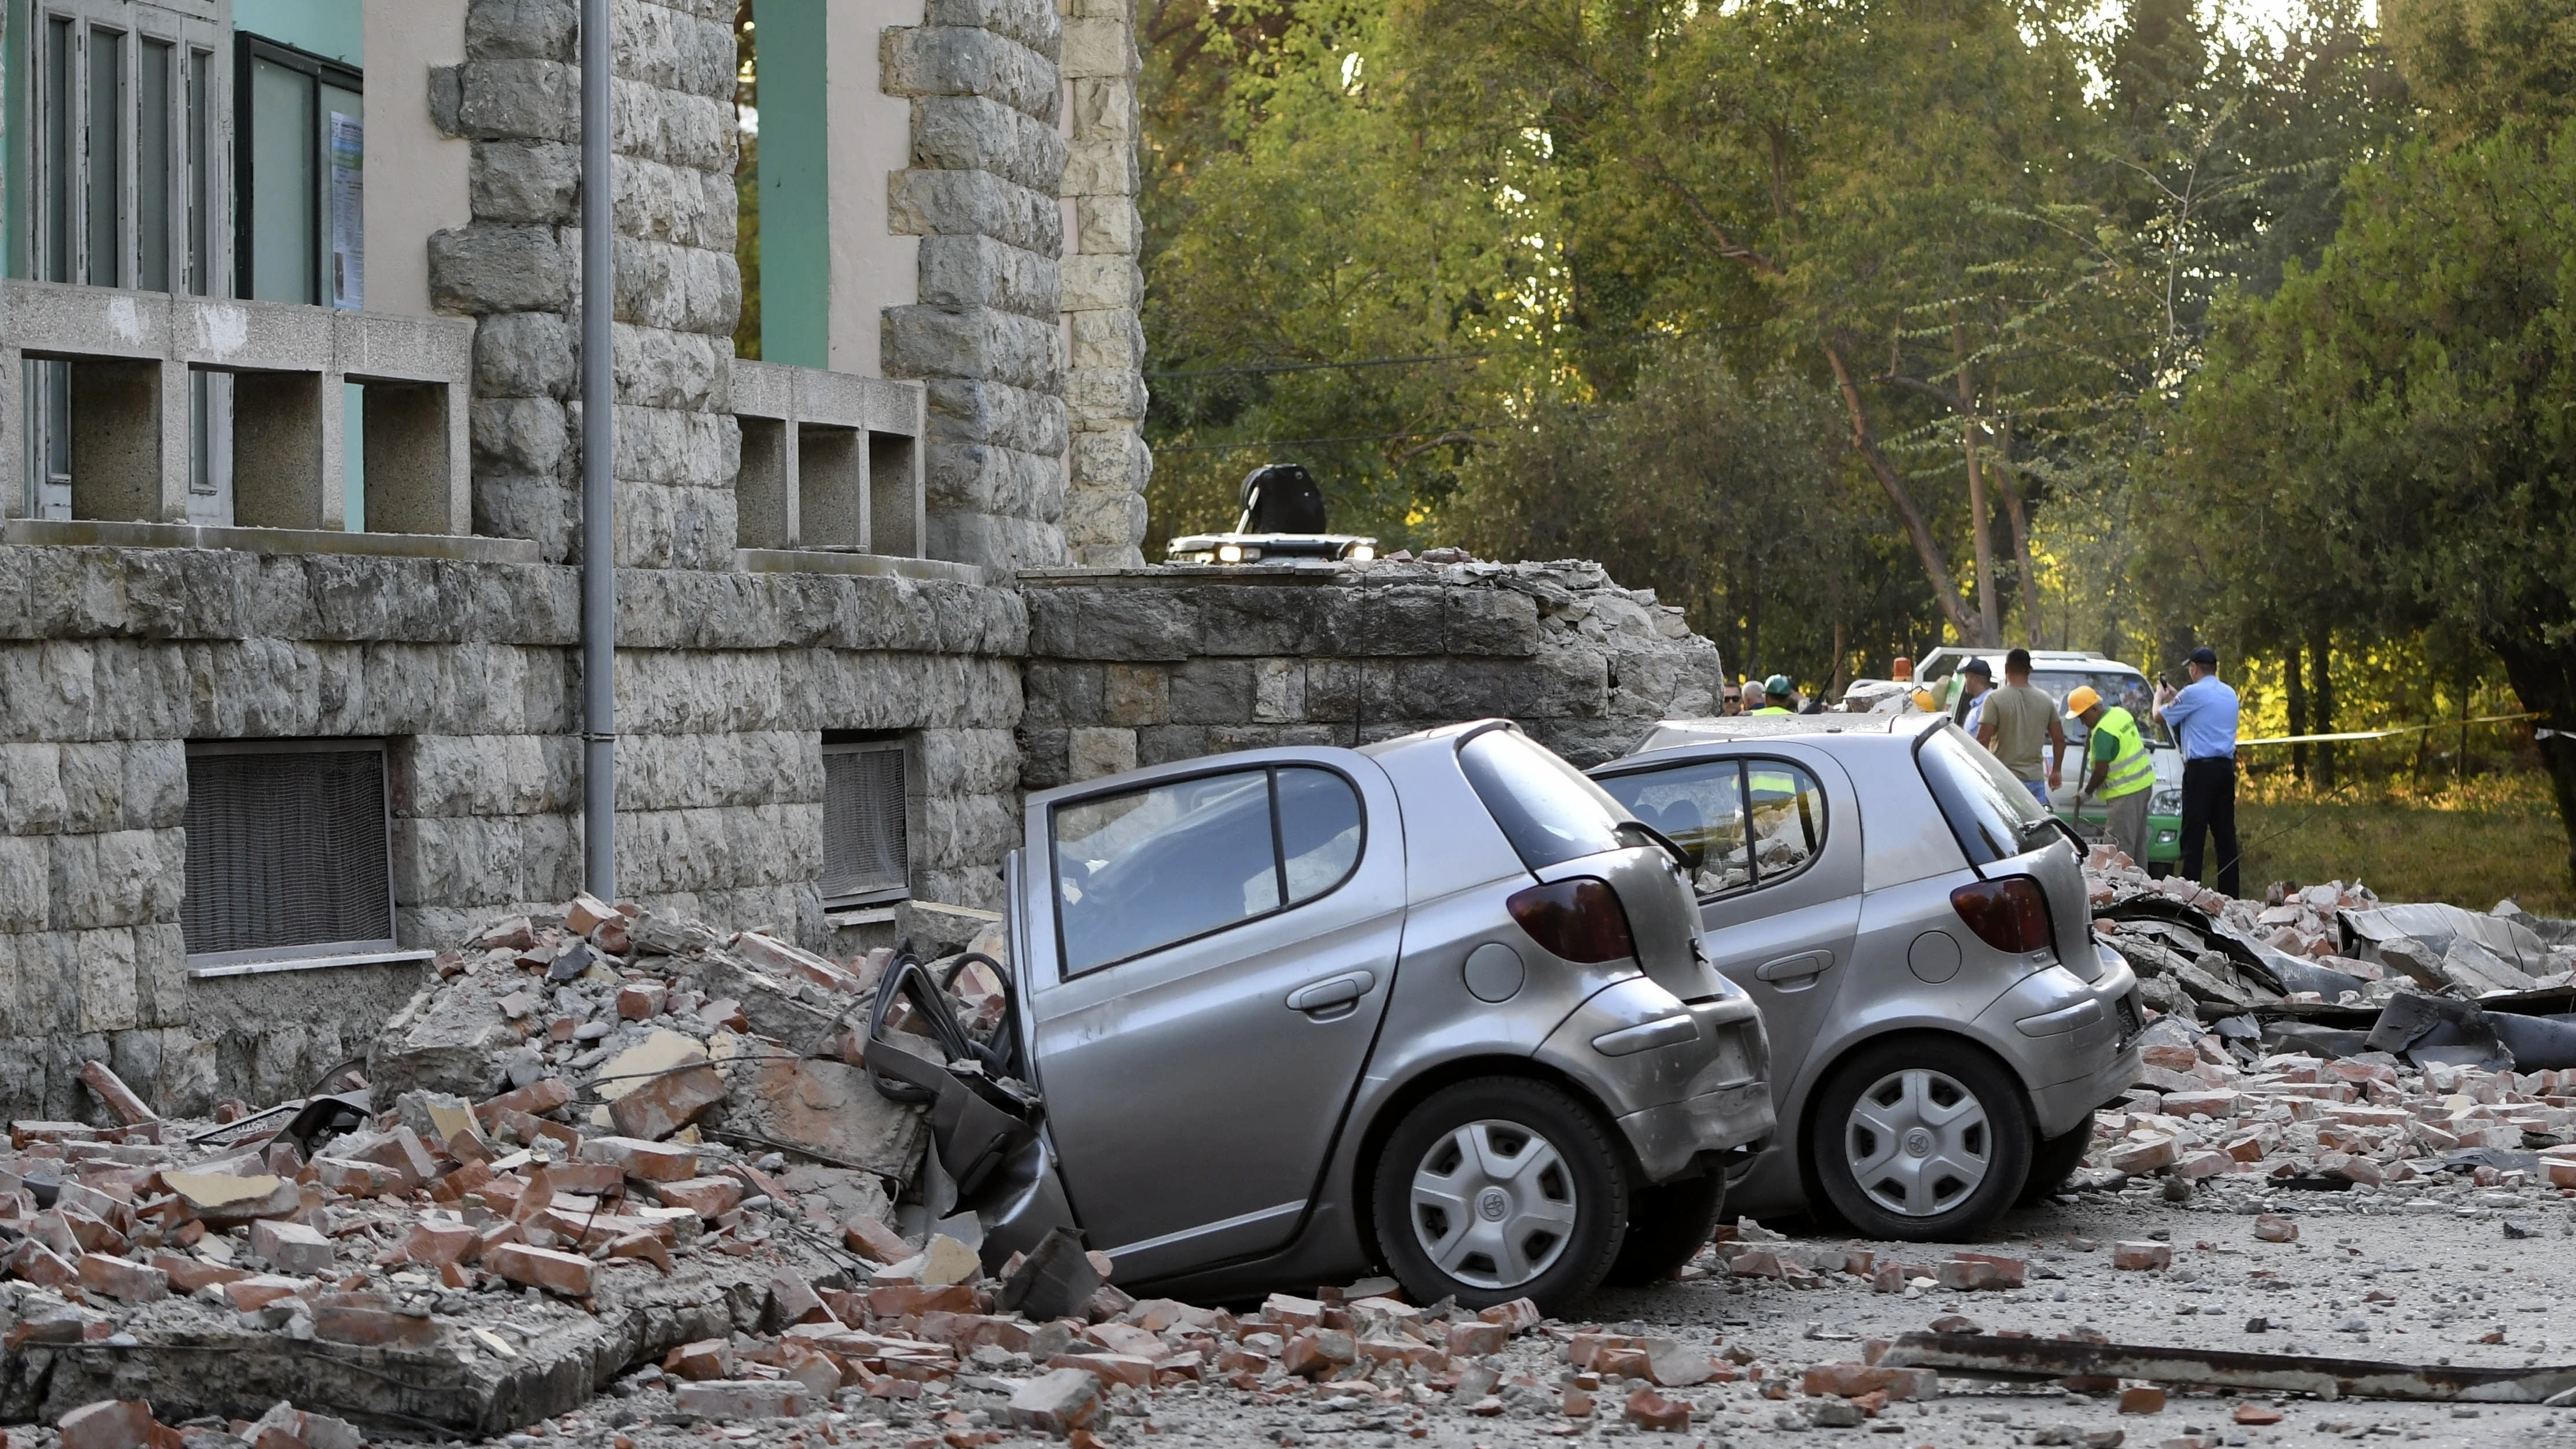 Самые сильные землетрясения происходят. Землетрясение. Землетрясение в Албании. Сильнейшее землетрясение. Землетрясение в Аргентине.